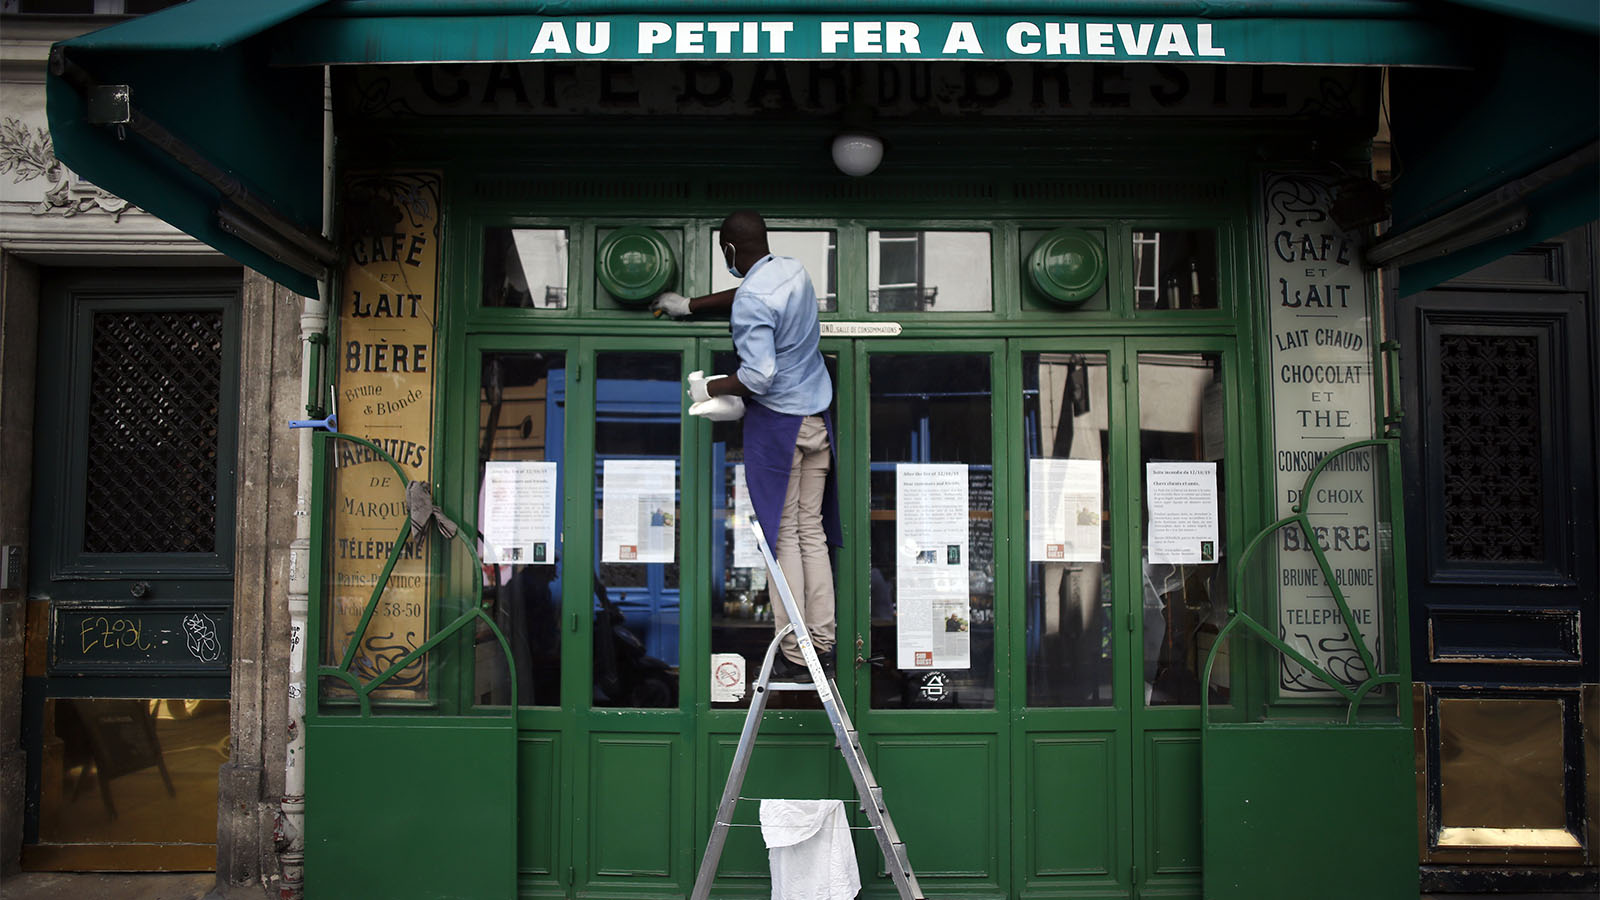 ג'יבריל, עבוד באחד מבתי הקפה בפריז, מנקה את החלון הקדמי של בית הקפה הסגור (AP Photo/Thibault Camus)